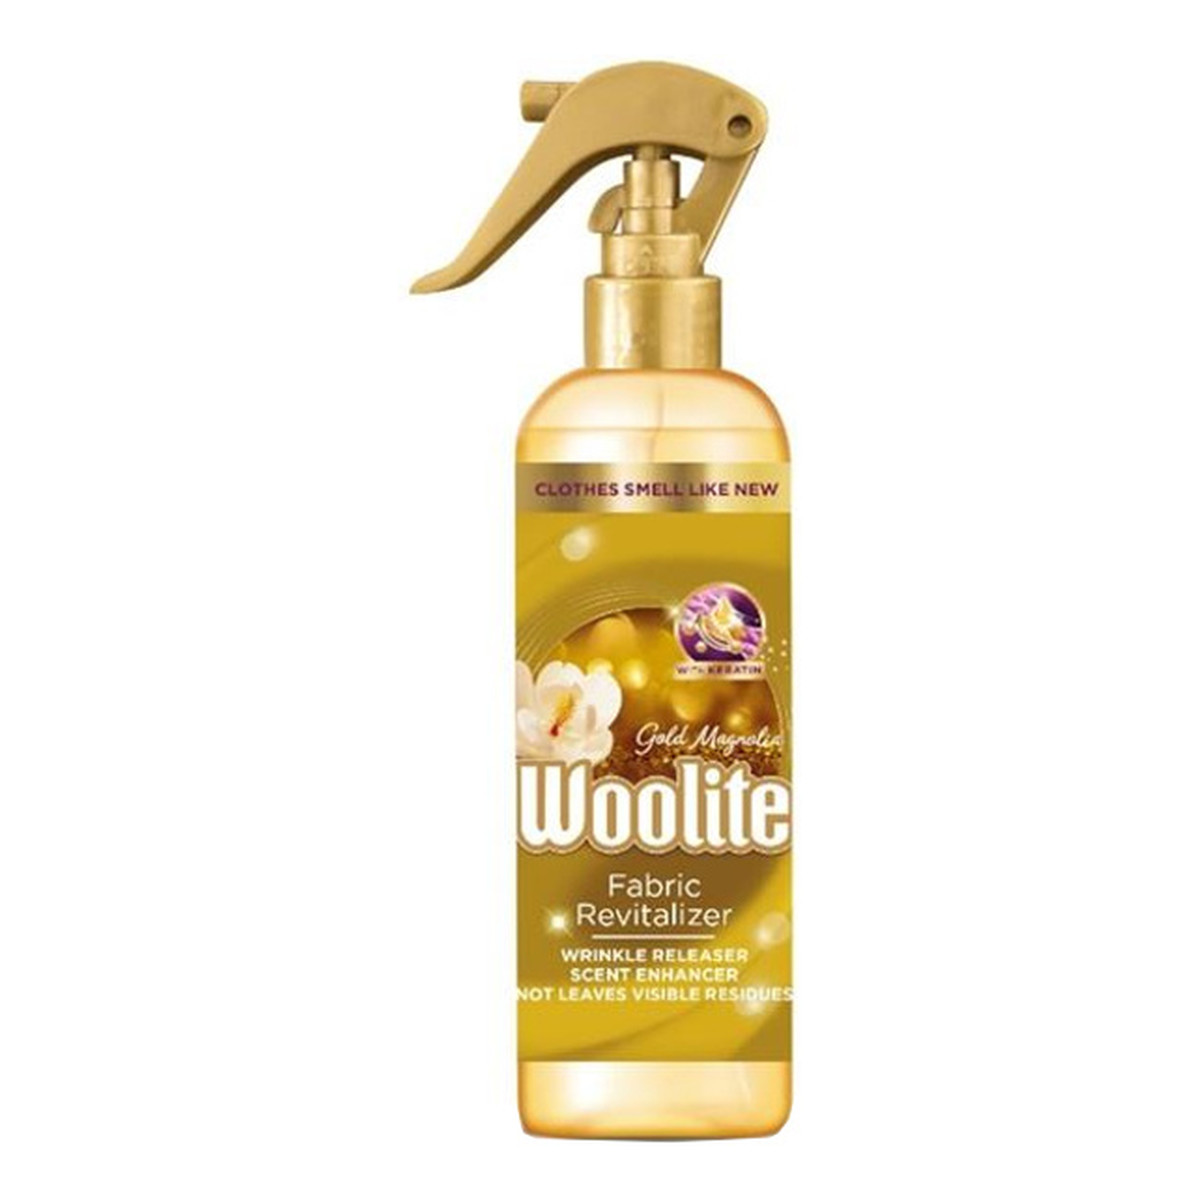 Woolite Gold Magnolia Spray do pielęgnacji tkanin z keratyną 300ml